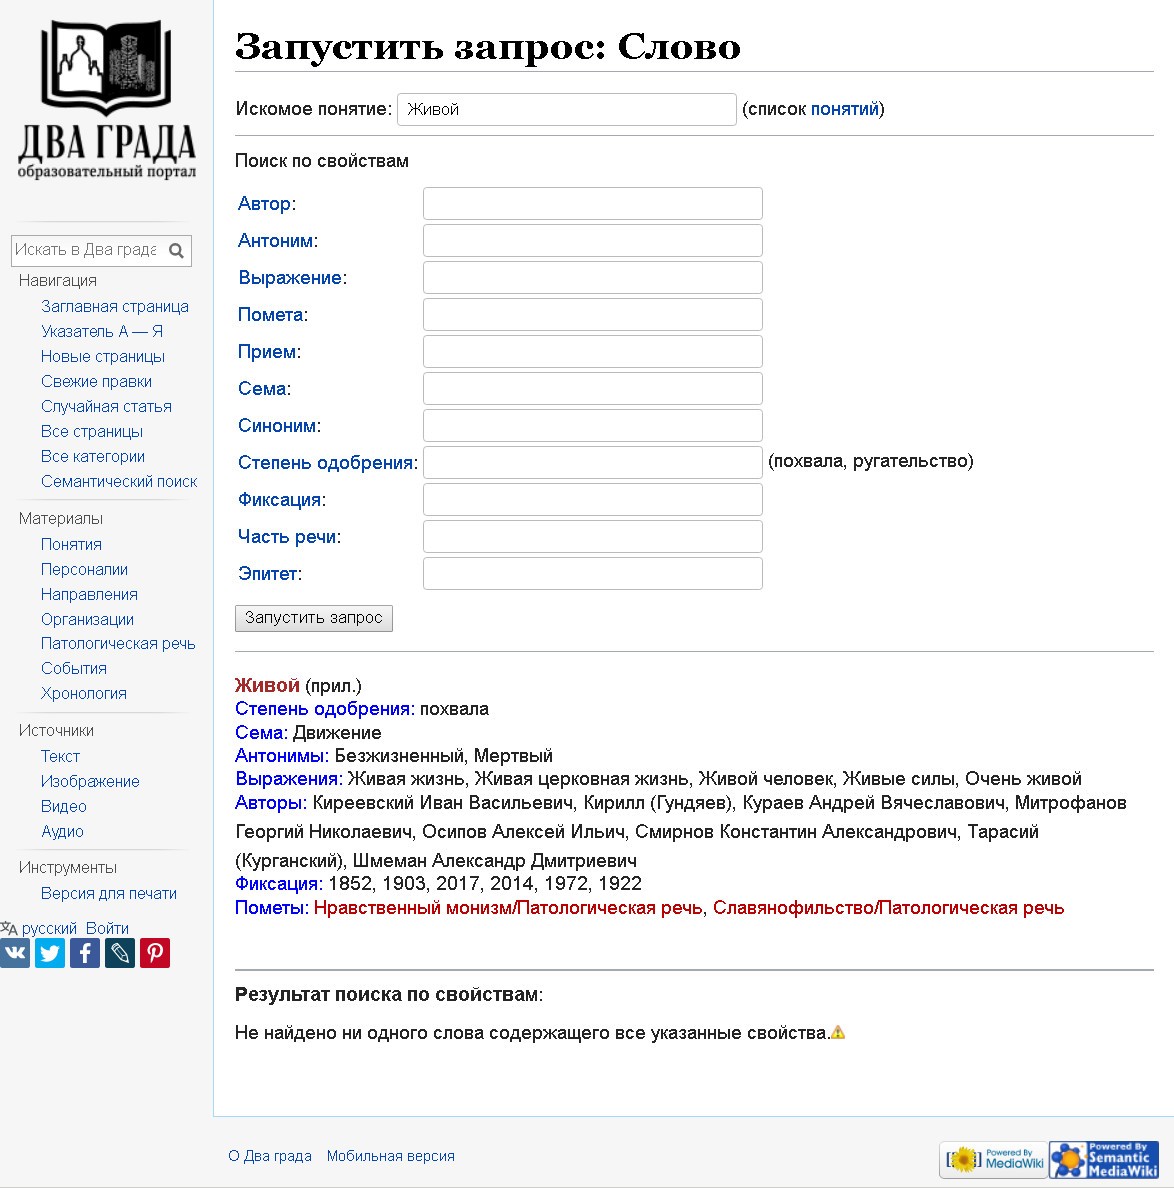 Как пользоваться словарем языка православного модернизма